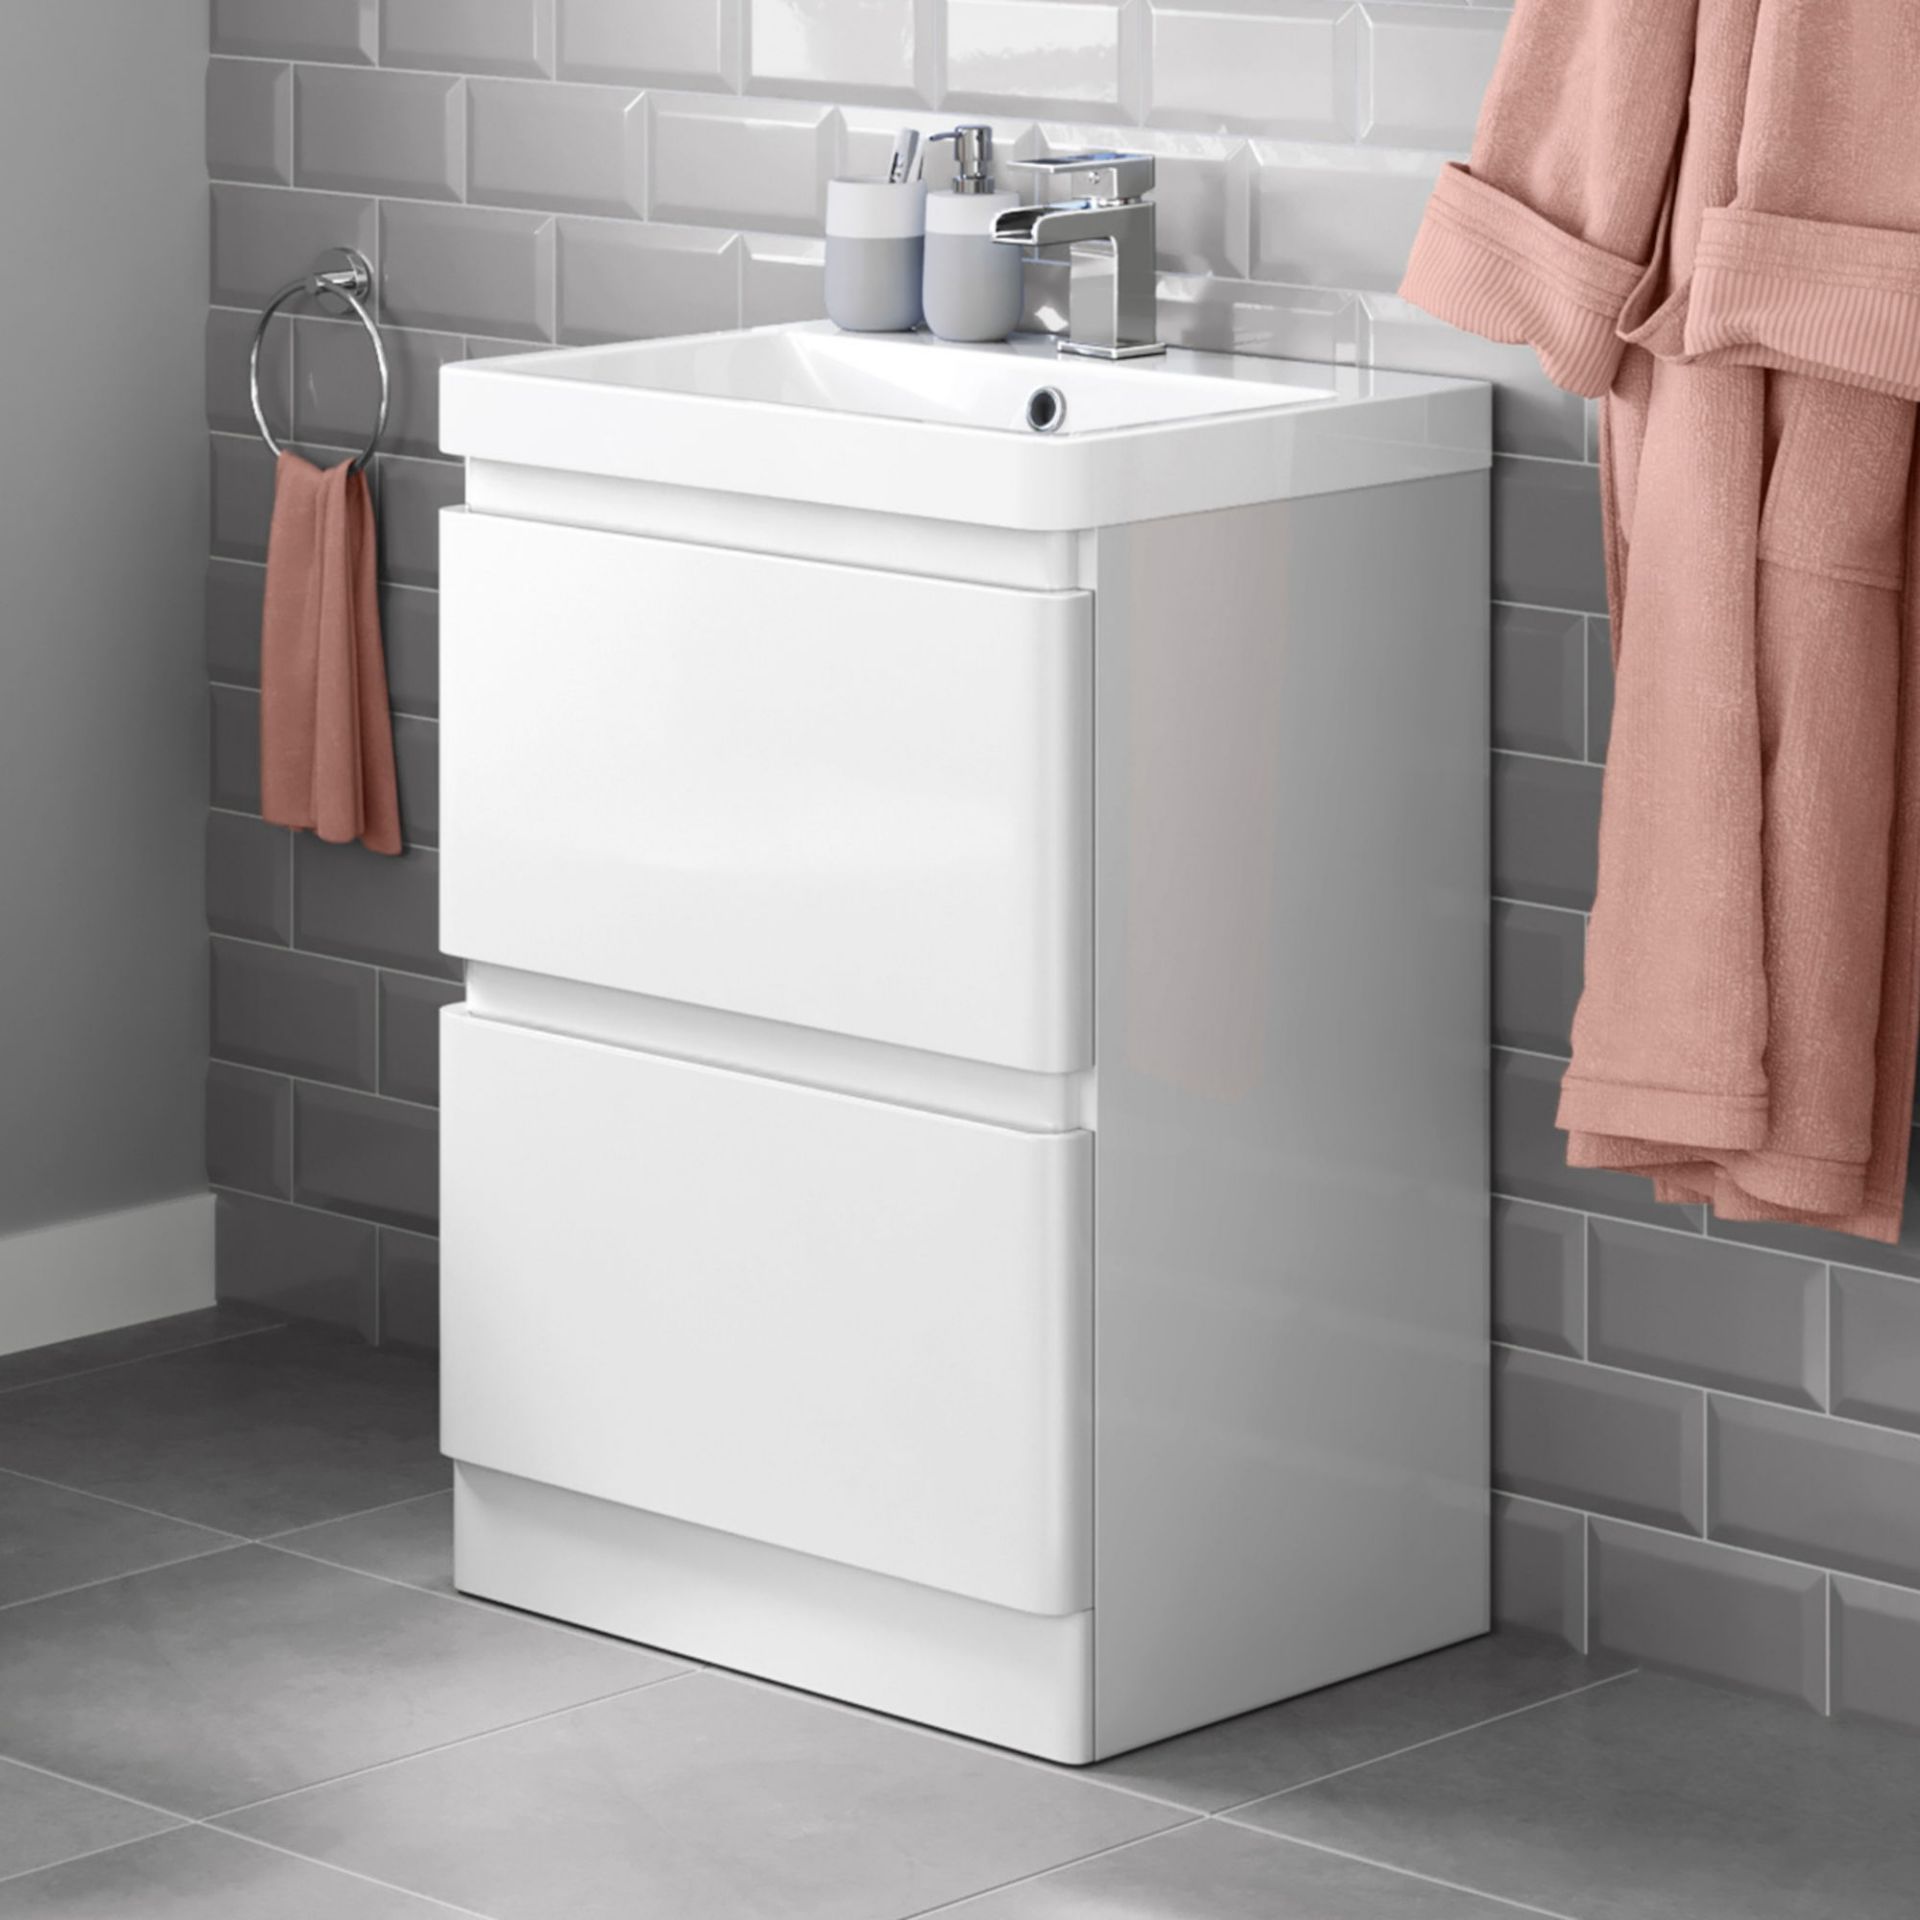 NEW & BOXED 600mm Denver Gloss White Built In Sink Drawer Unit - Floor Standing.RRP £849.99.MF2407.